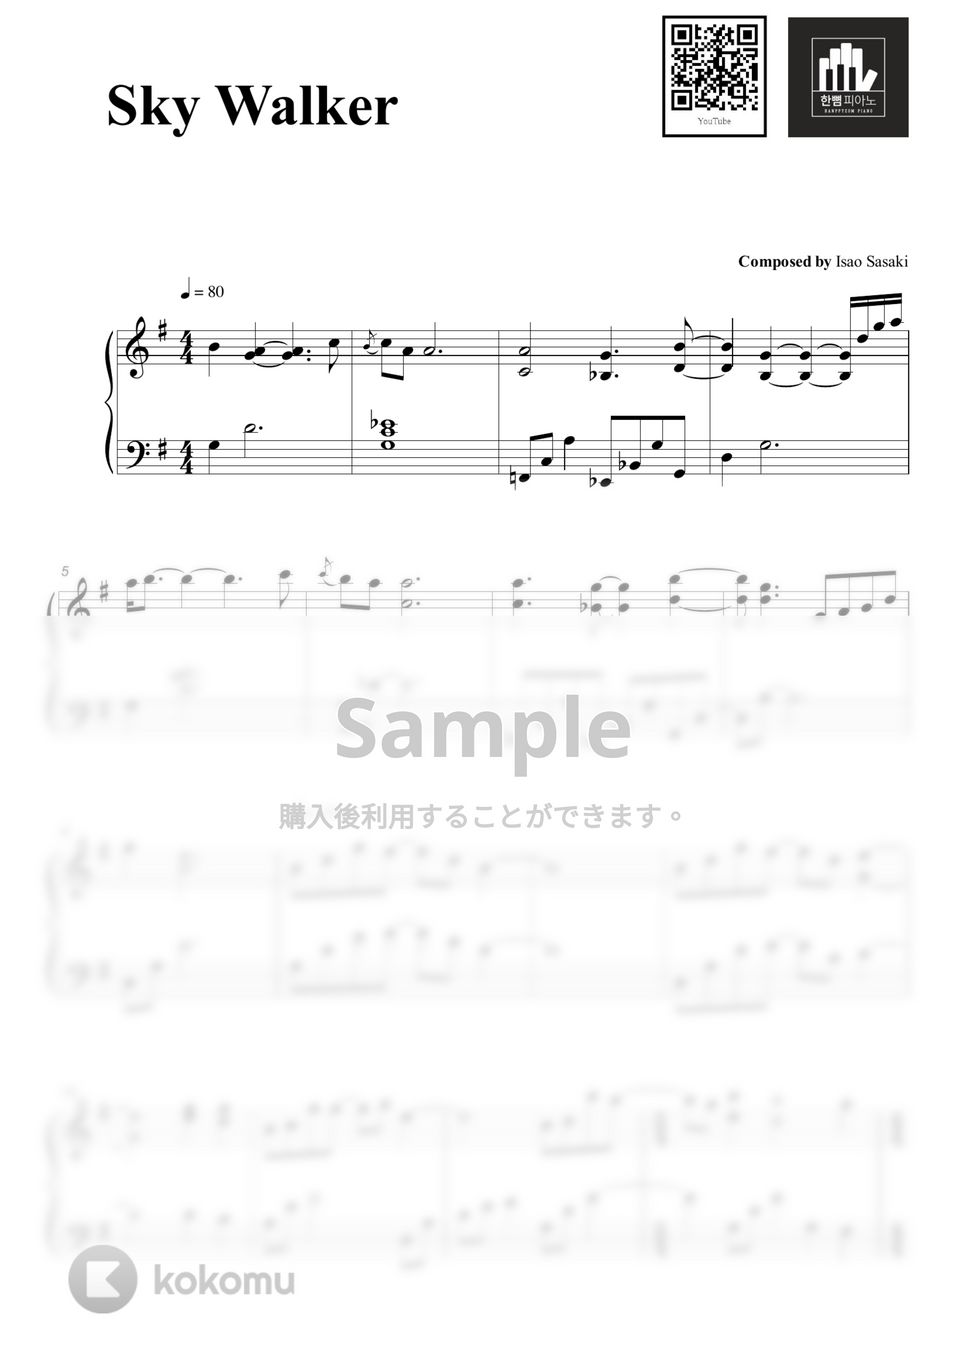 Isao Sasaki - Sky Walker (PIANO COVER) by HANPPYEOMPIANO